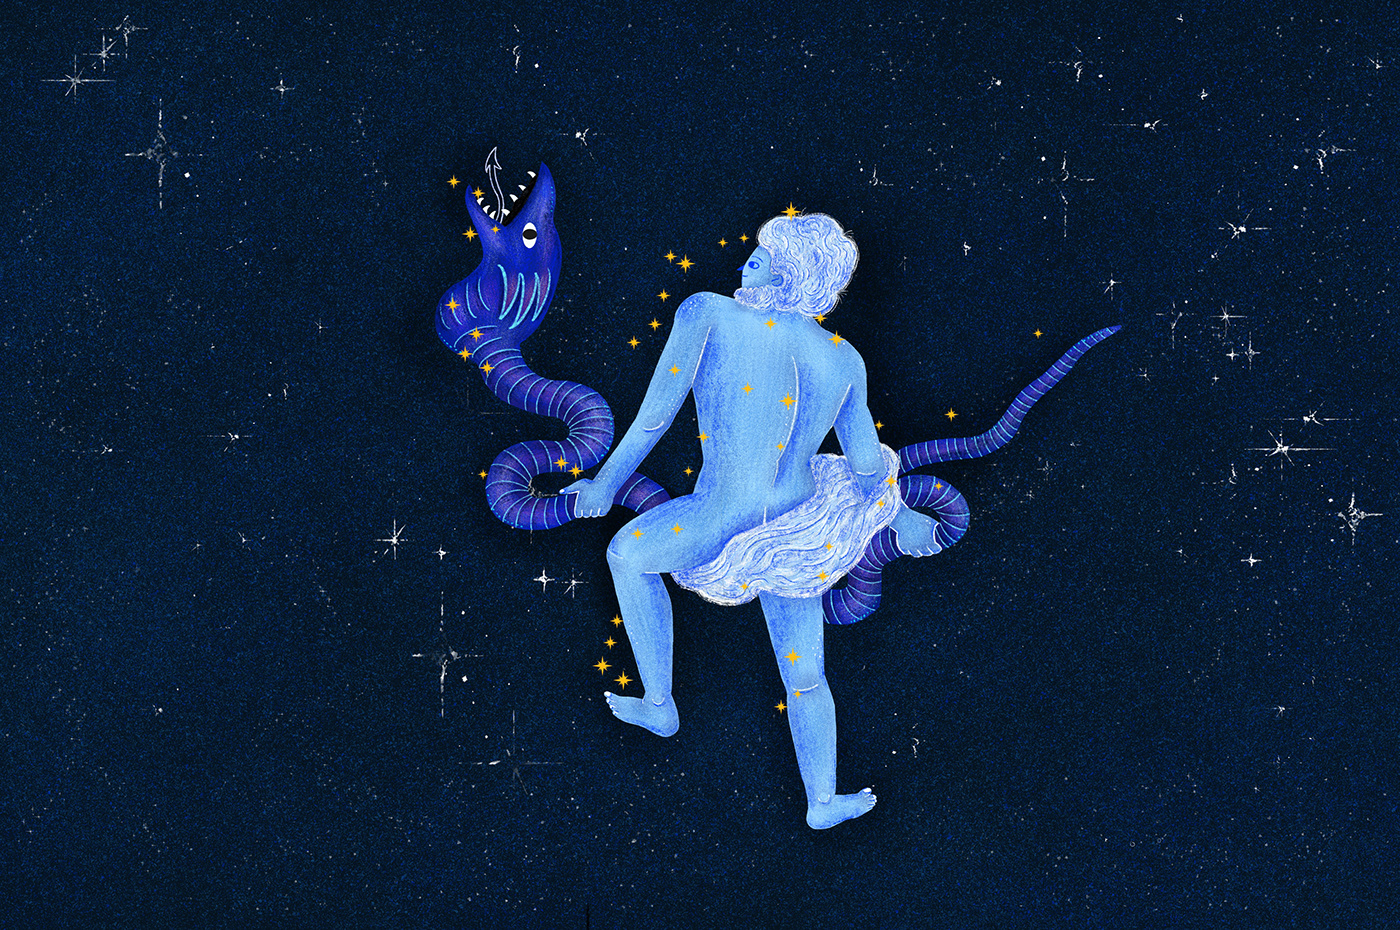 aries astronomy cancer children illustration children's book constellation galaxy milky way stars zodiac